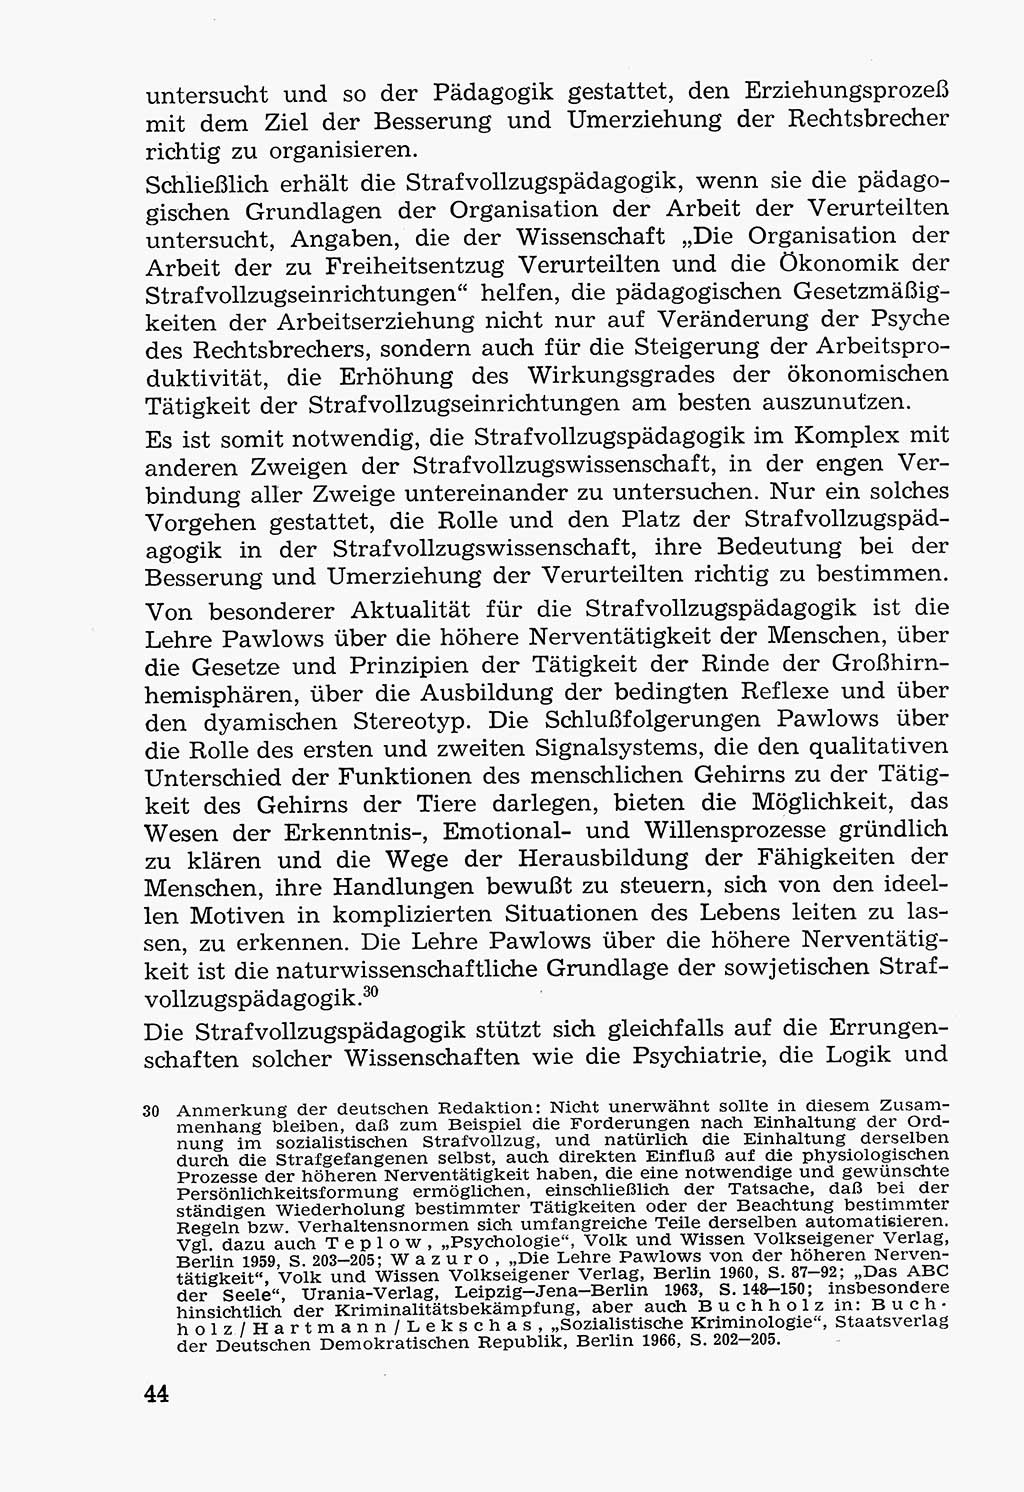 Lehrbuch der Strafvollzugspädagogik [Deutsche Demokratische Republik (DDR)] 1969, Seite 44 (Lb. SV-Pd. DDR 1969, S. 44)